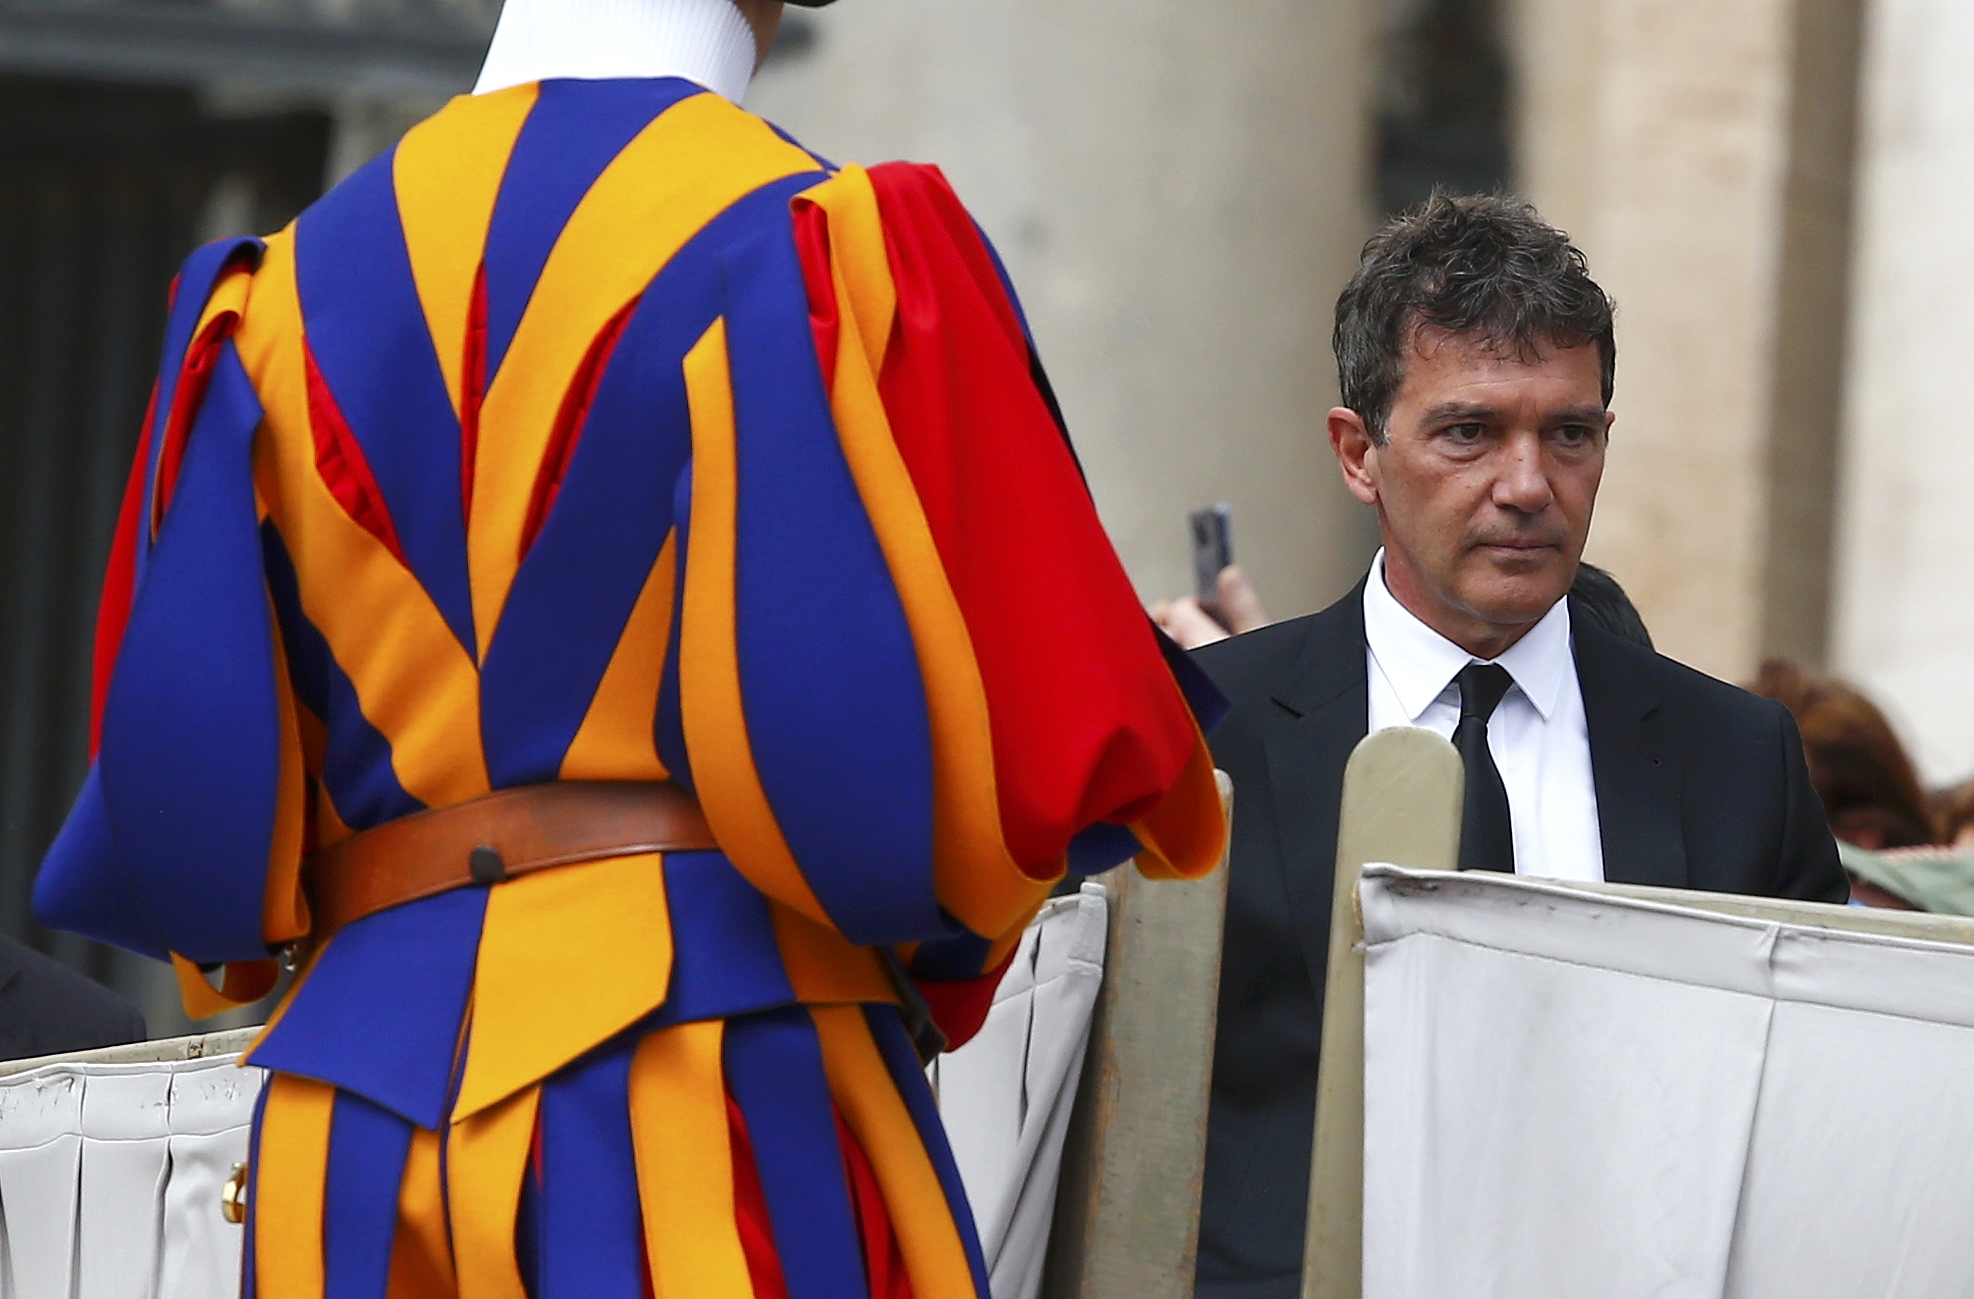 El papa Francisco saluda al actor español Antonio Banderas en el Vaticano